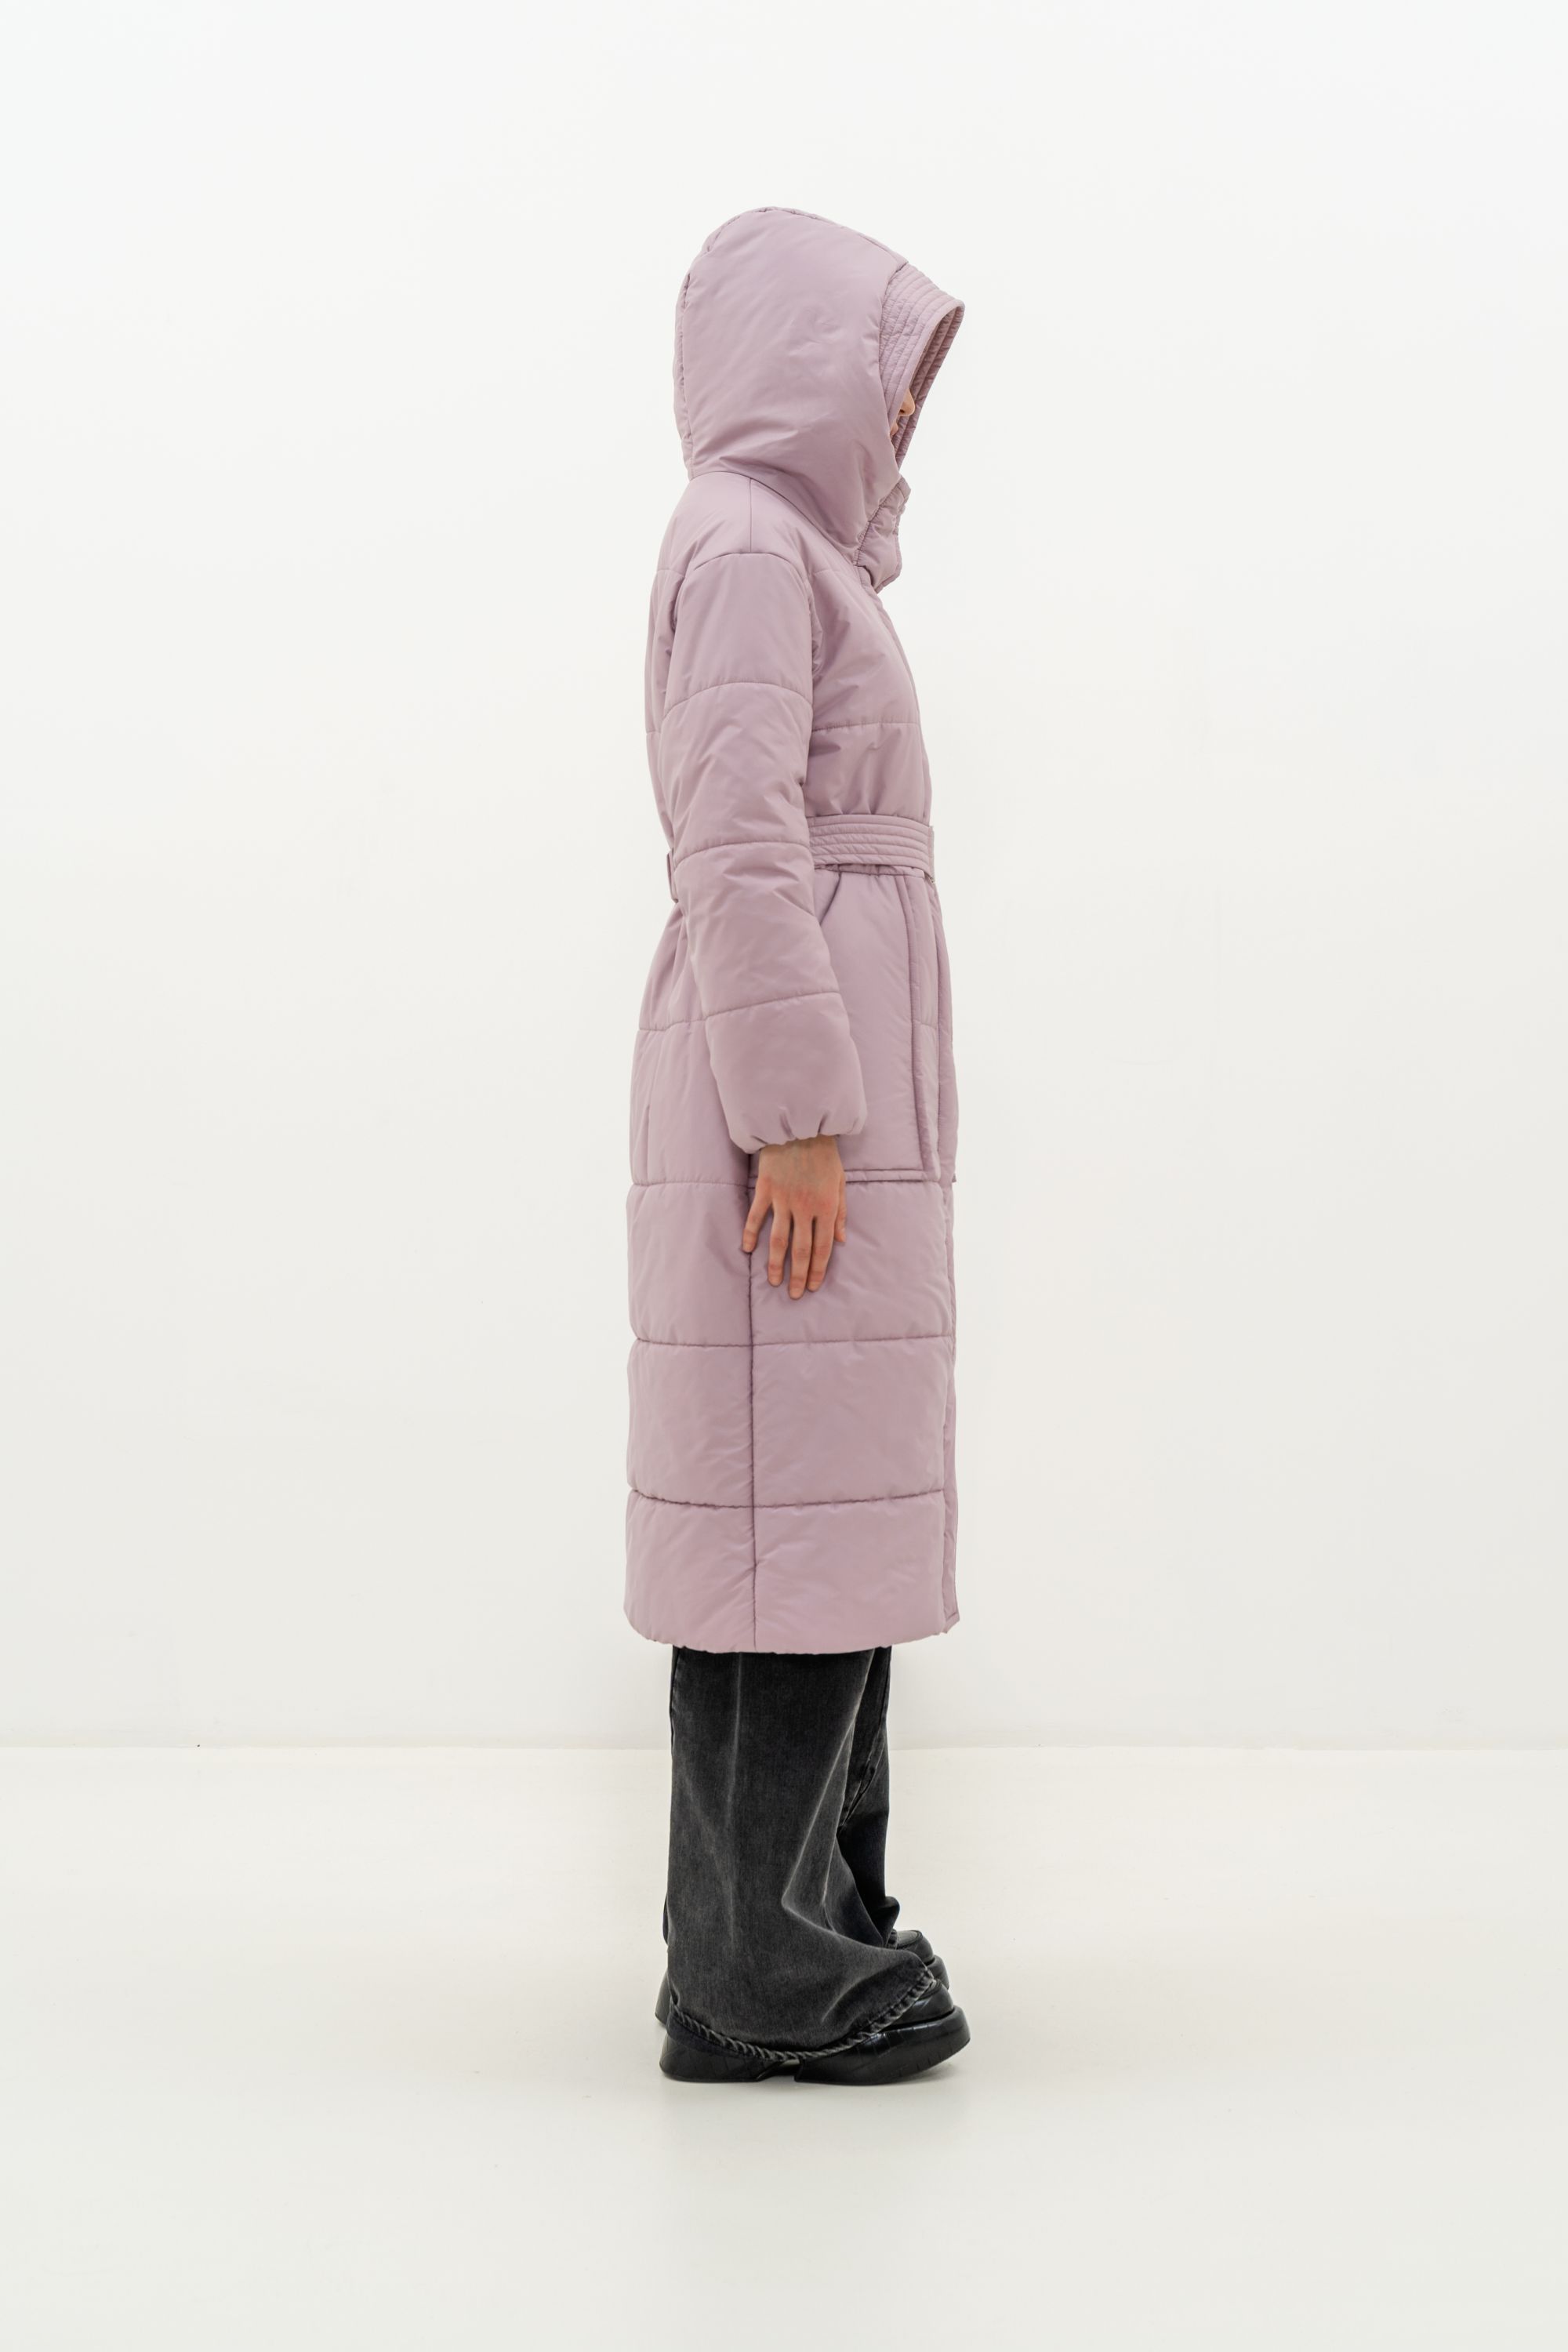 Пальто женское плащевое утепленное 5-12173-1. Фото 3.